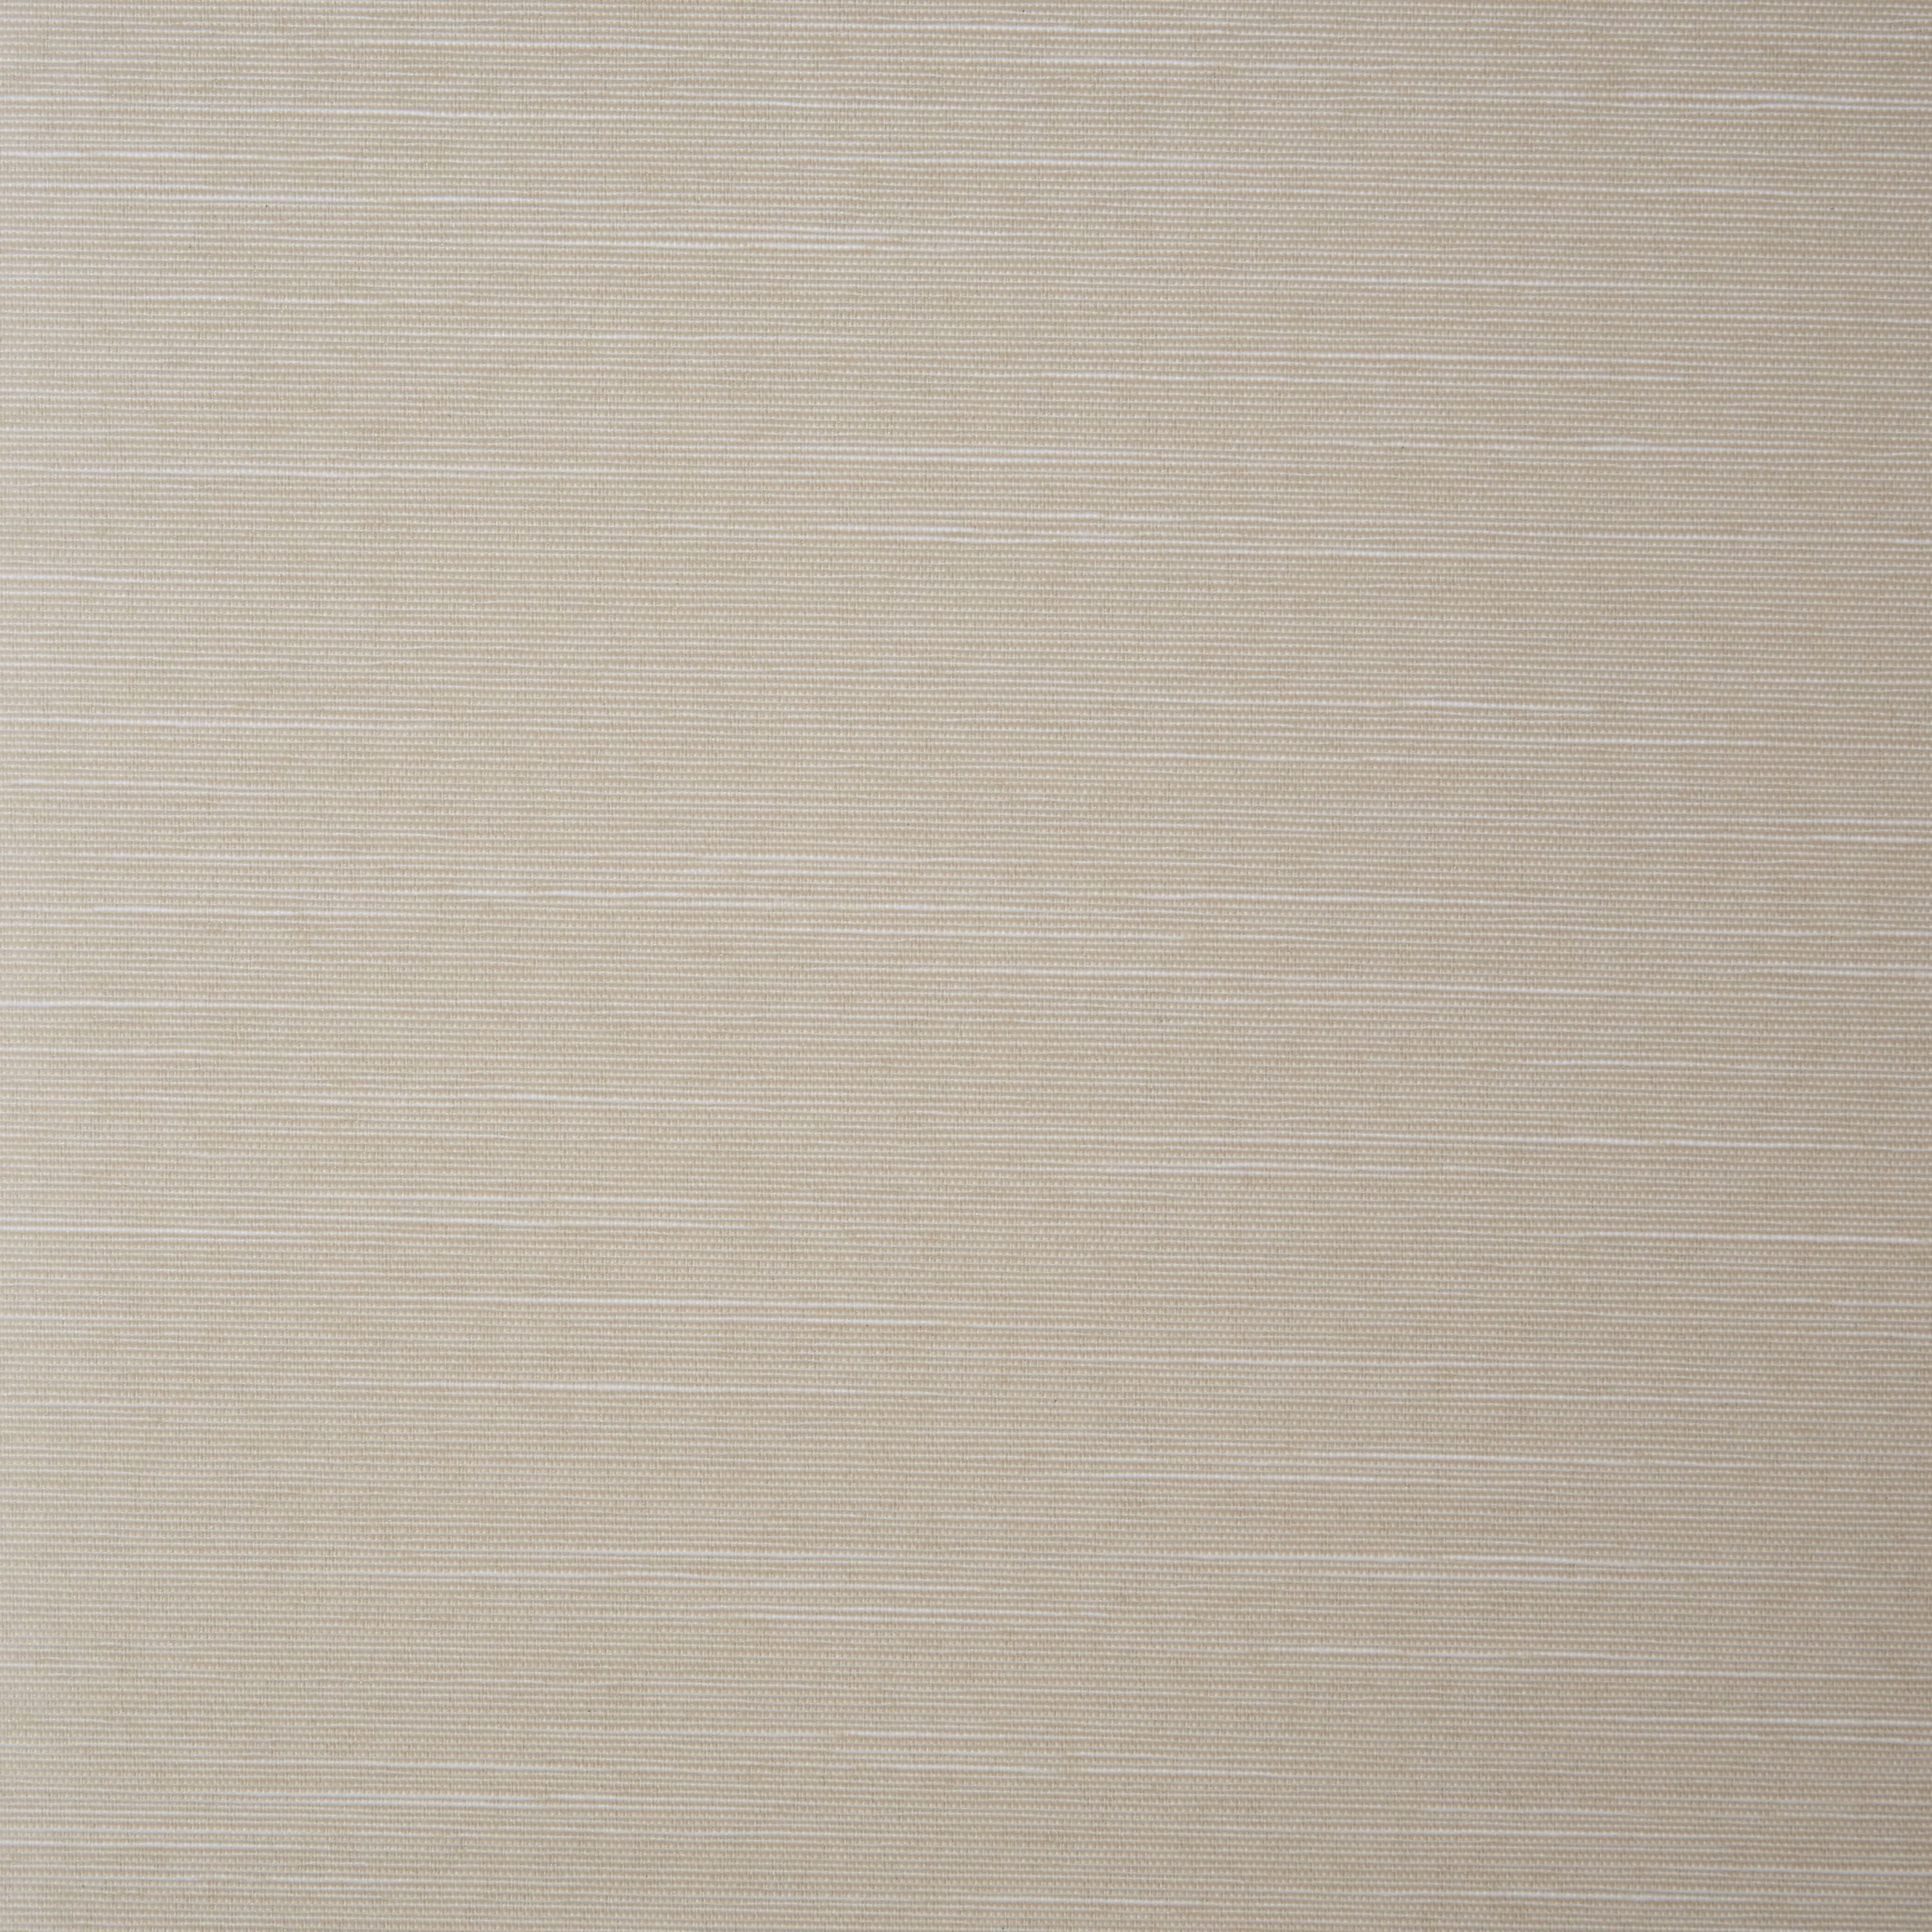 Corded Ivory Plain Daylight Roller blind (W)120cm (L)160cm